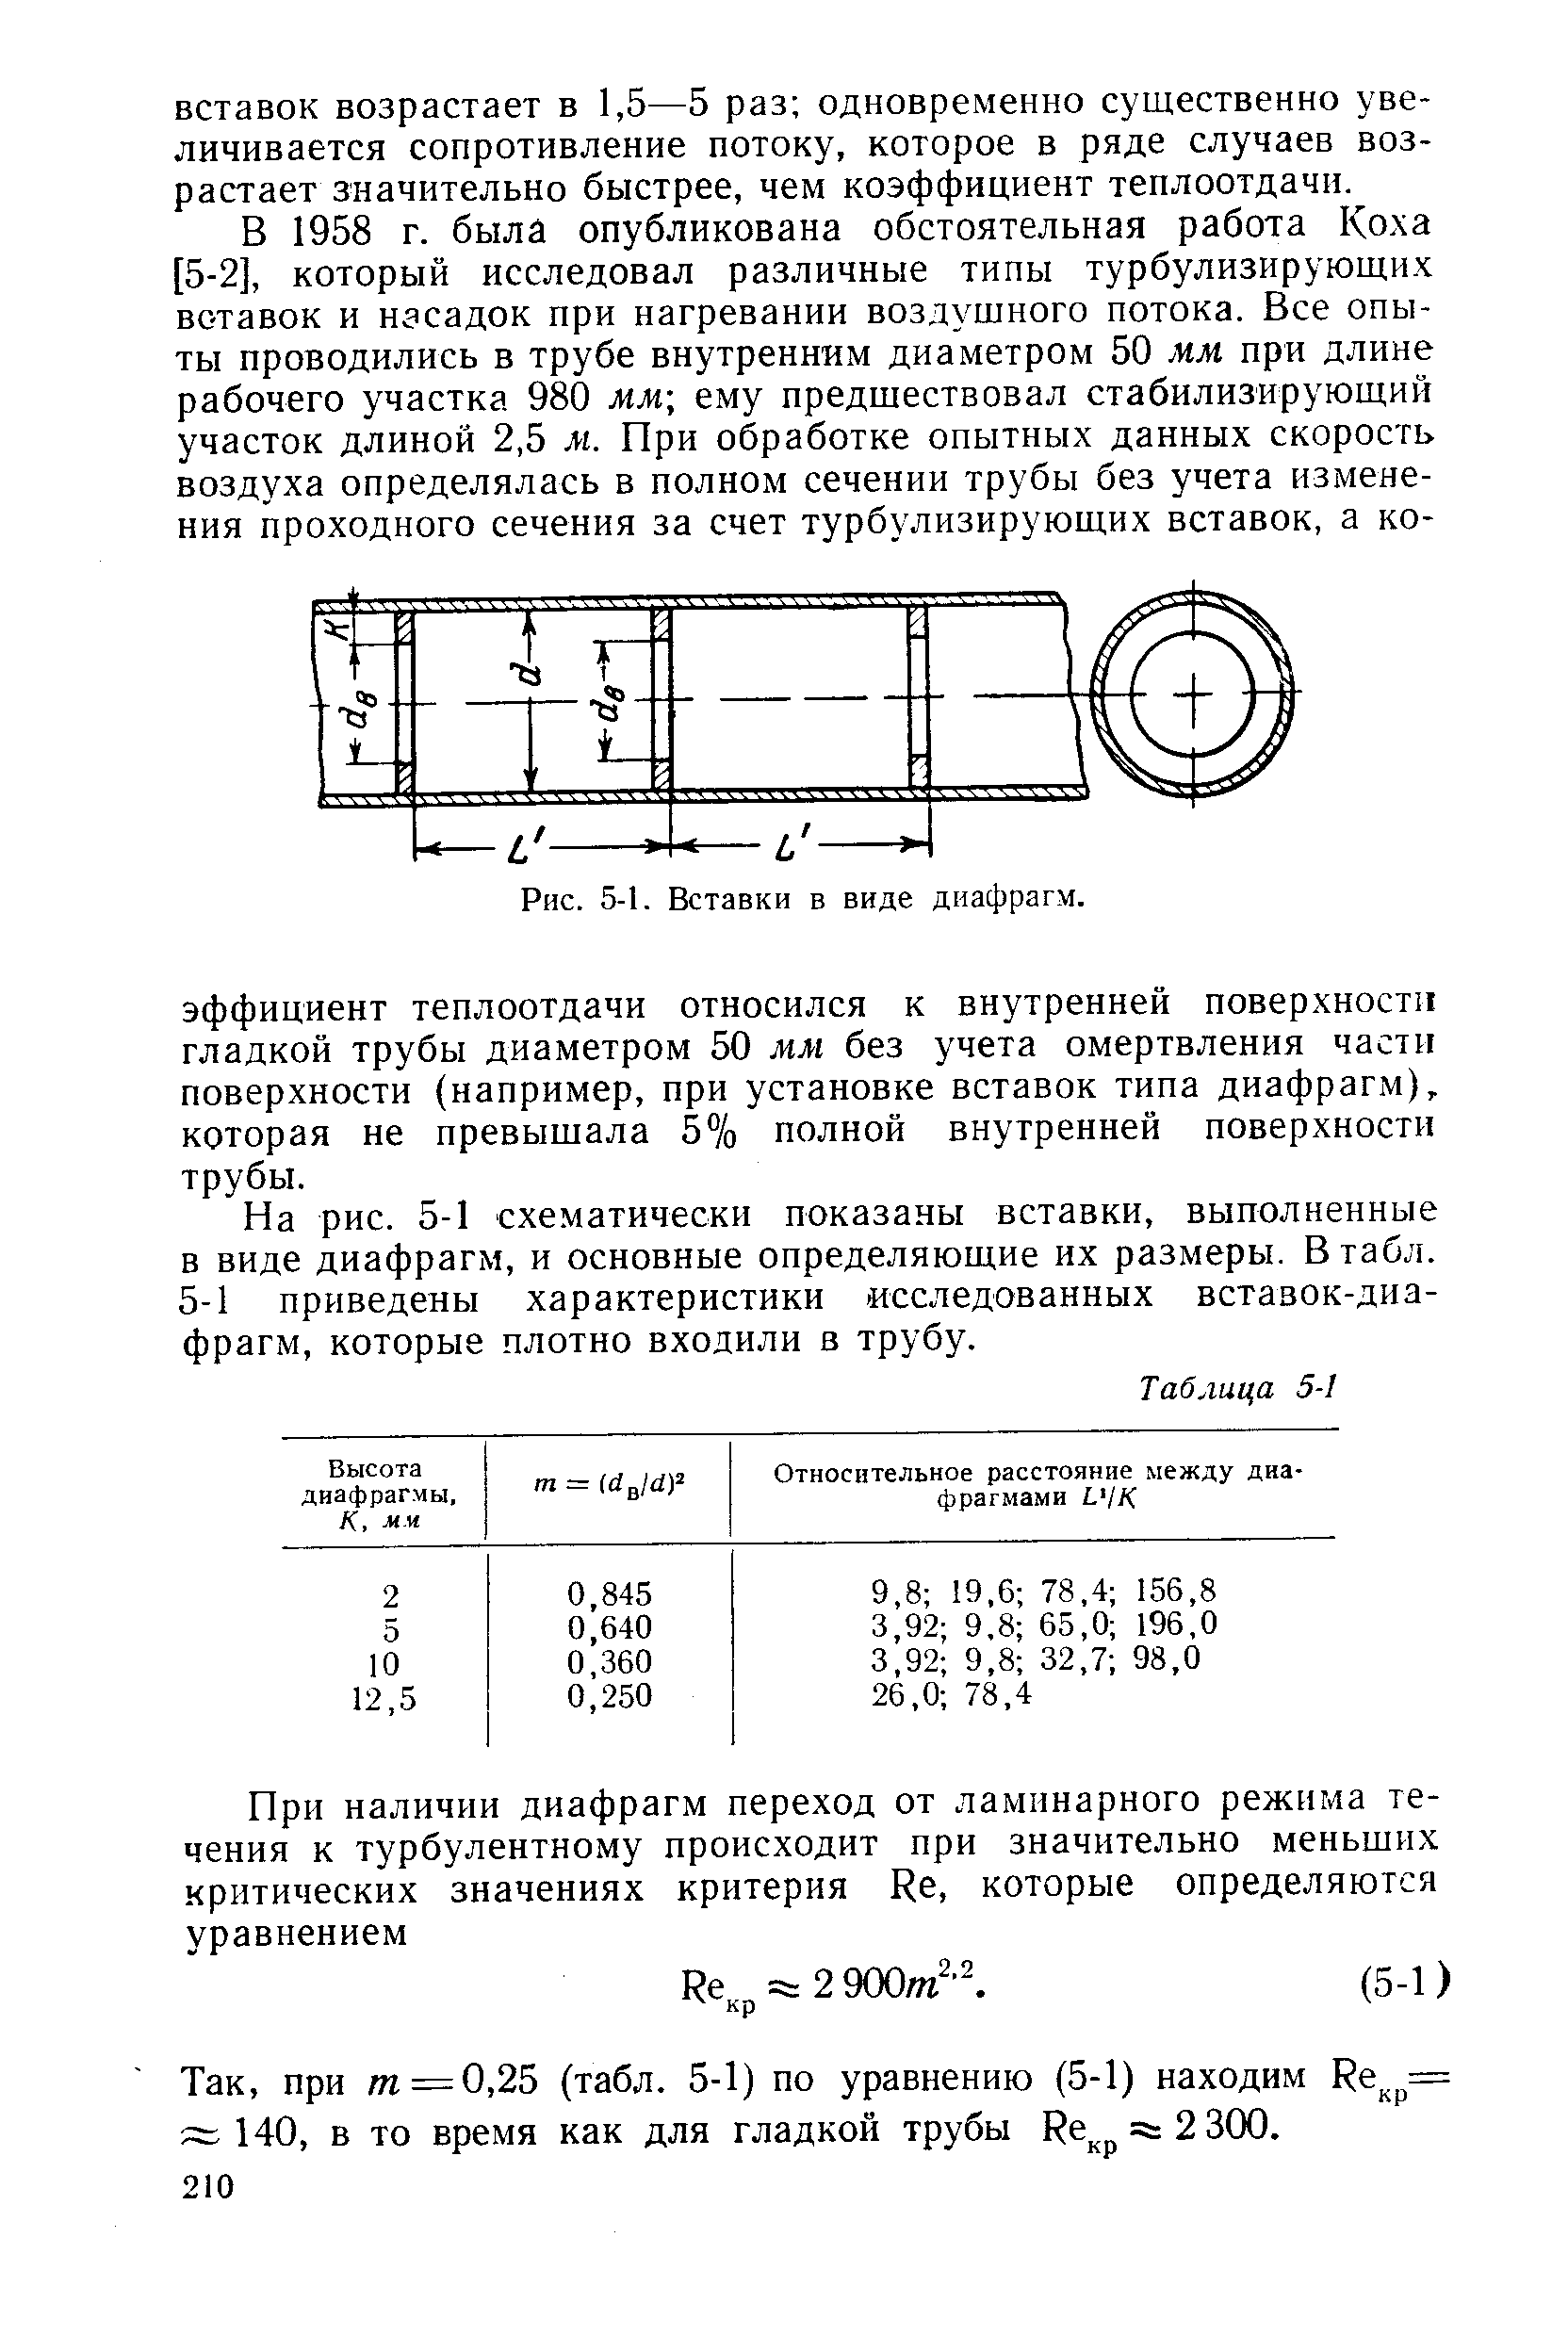 На рис. 5-1 схематически показаны вставки, выполненные в виде диафрагм, и основные определяющие их размеры. В табл. 5-1 приведены характеристики сследованных вставок-диа-фрагм, которые плотно входили в трубу.